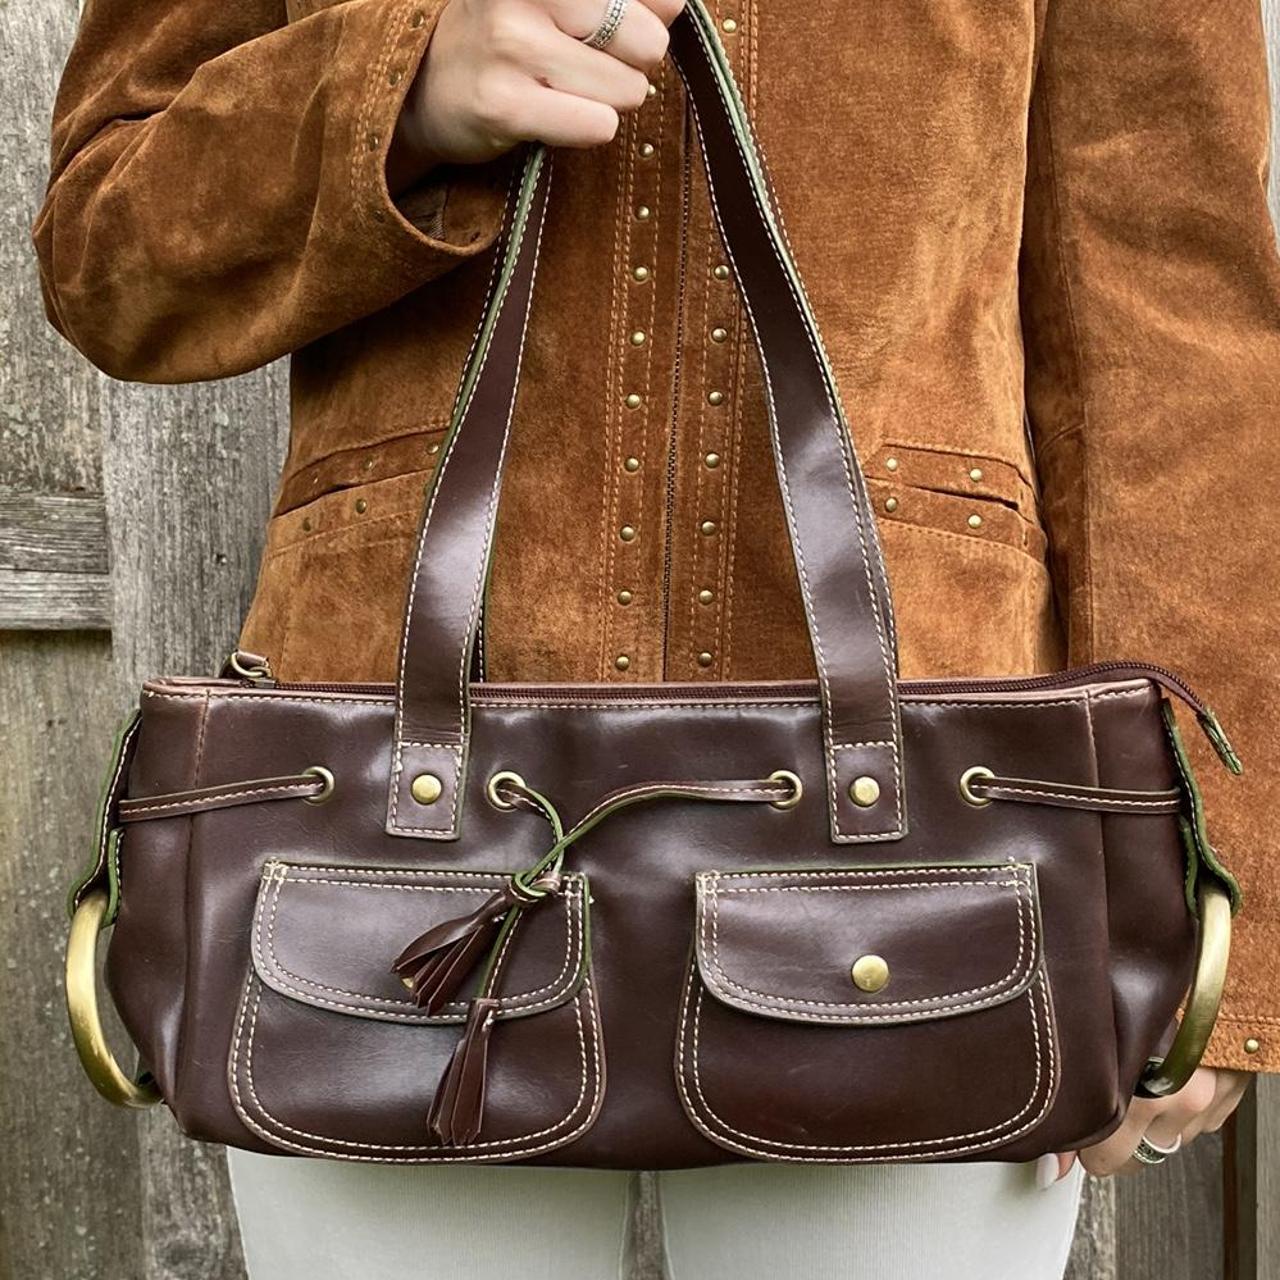 Leather purse 🍒 - Depop